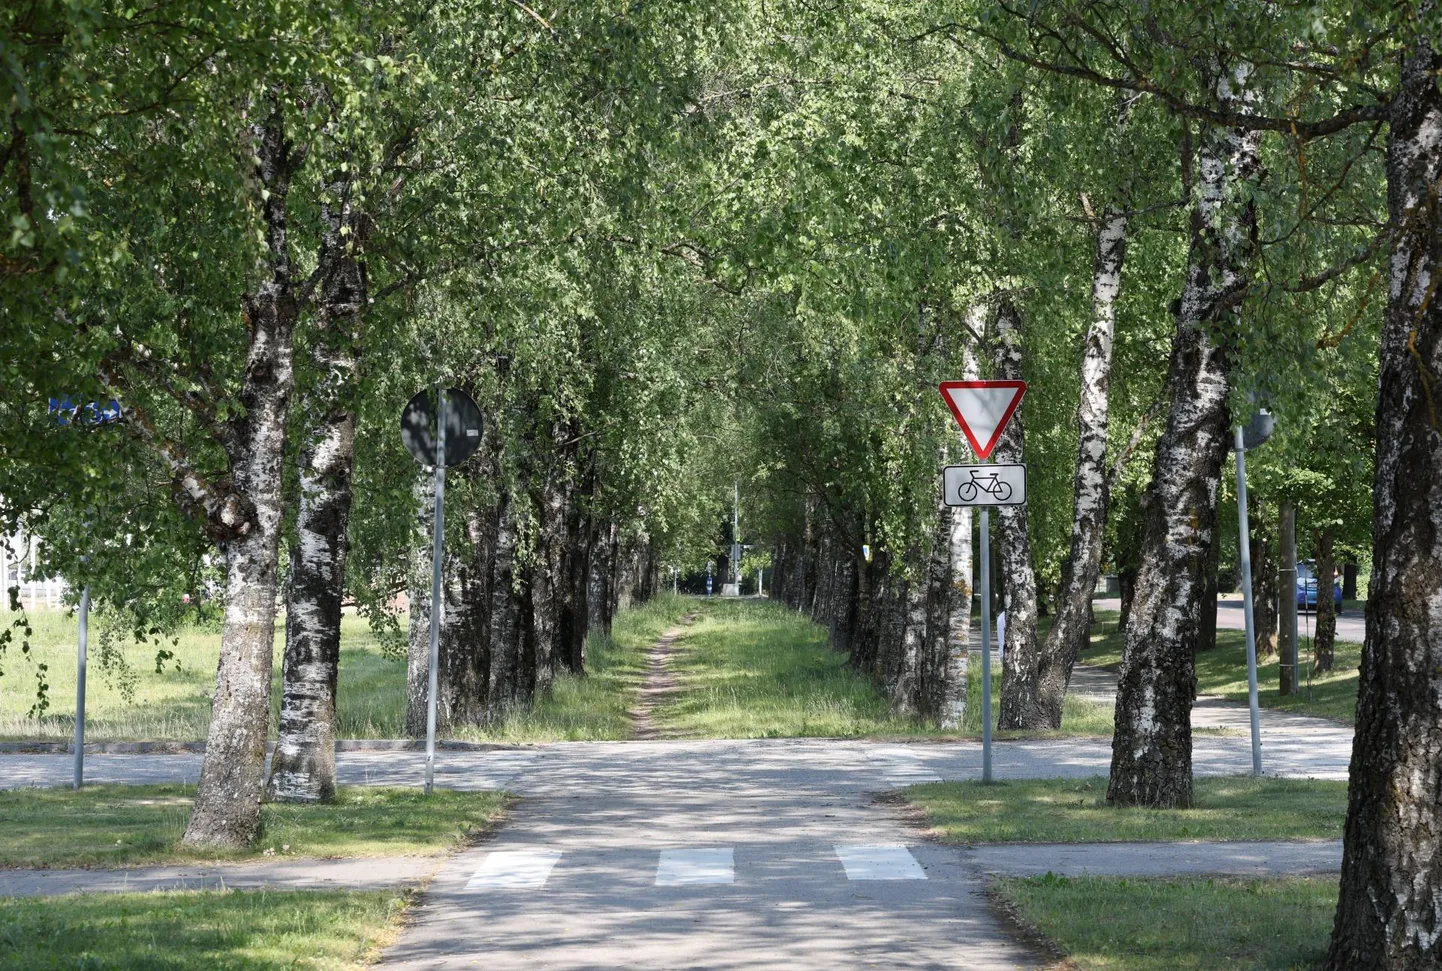 Ravila tänava kaseallee keskel kulgev rattatee on plaanis pikendada Viljandi ristmikuni ja kaseallee asemele istutada uued puud.